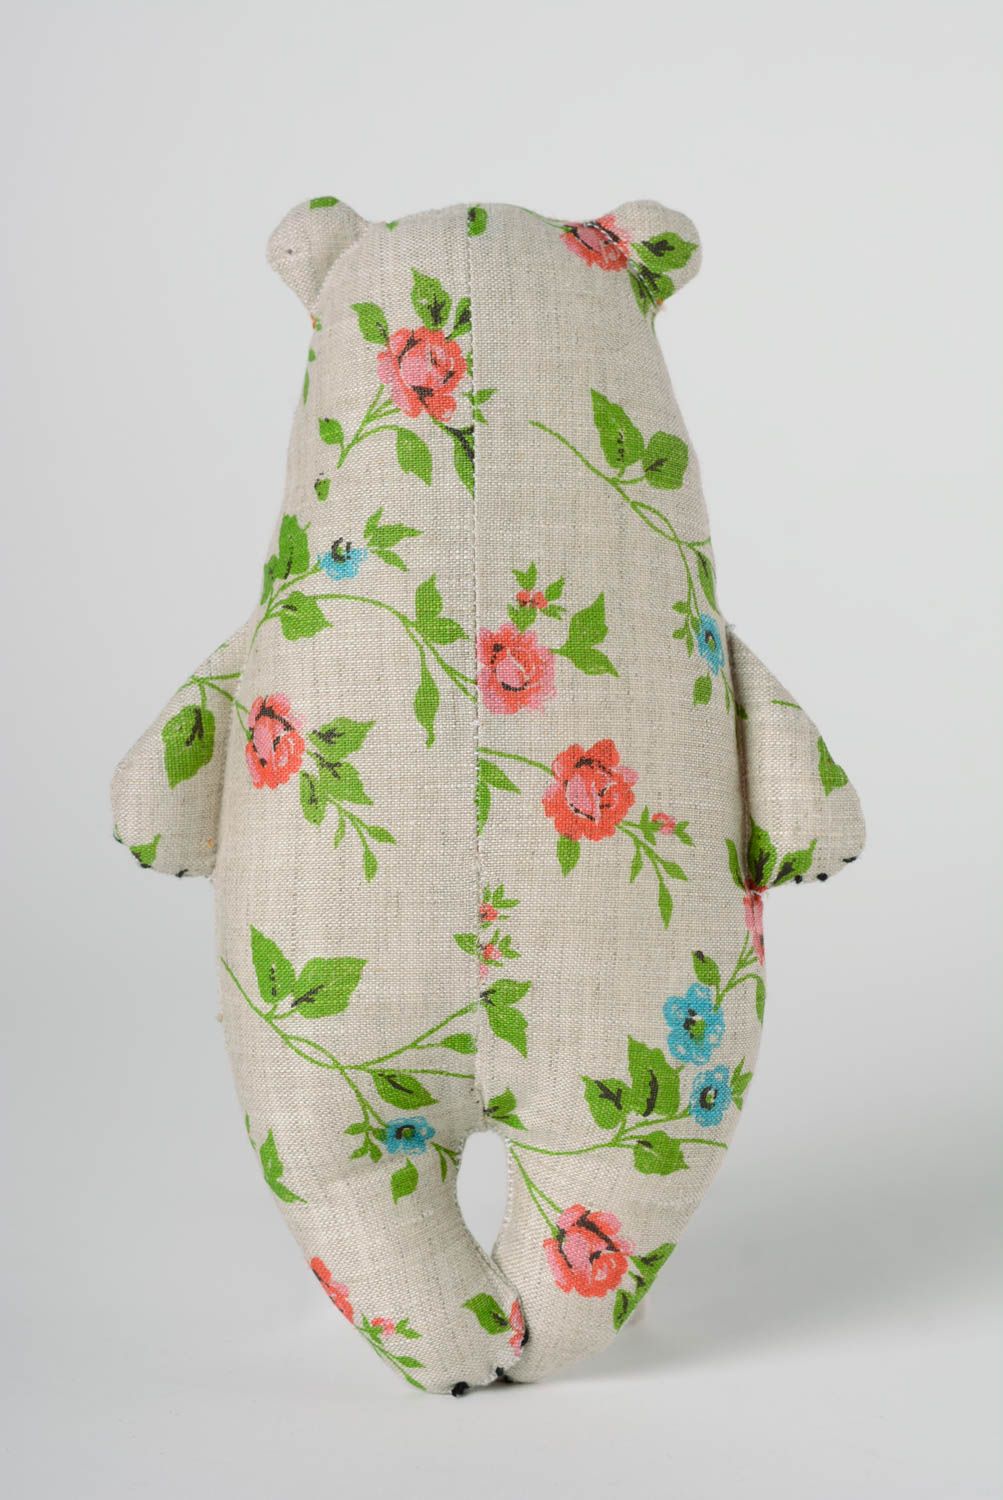 Мягкая игрушка из льна смешная медведь с вышивкой ручной работы для ребенка фото 4